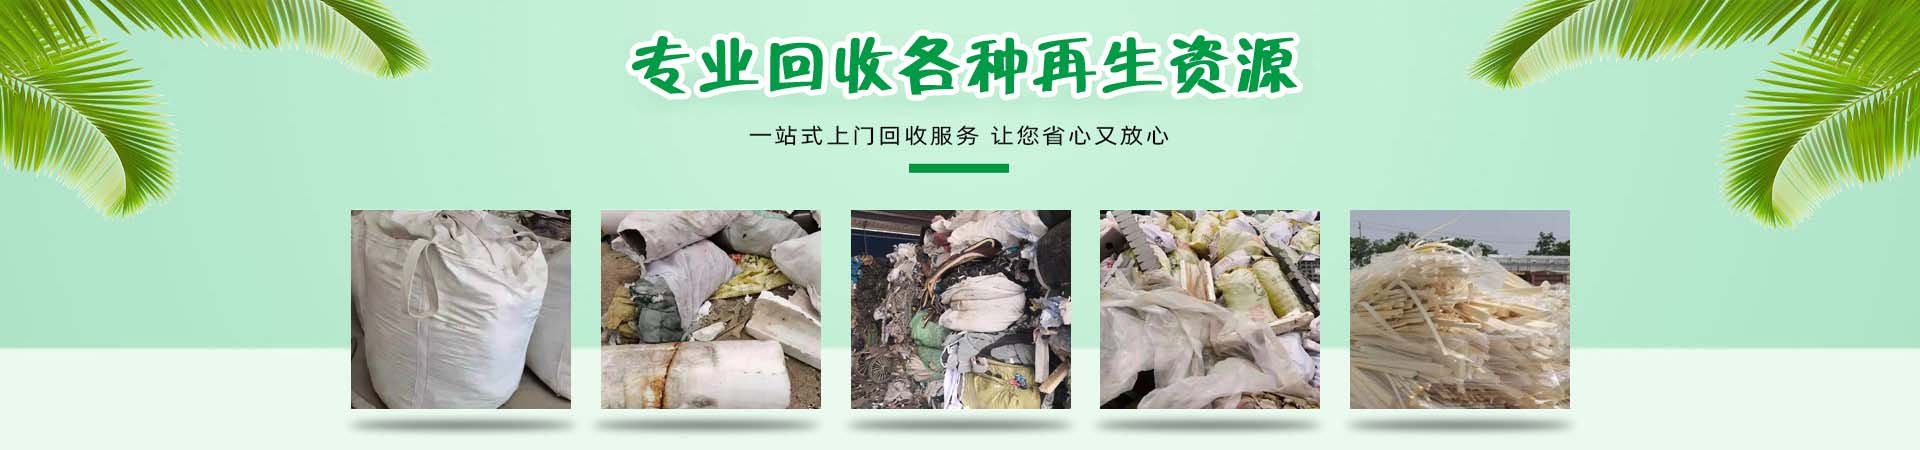 工业垃圾处理、邯郸本地工业垃圾处理、邯郸、邯郸工业垃圾处理